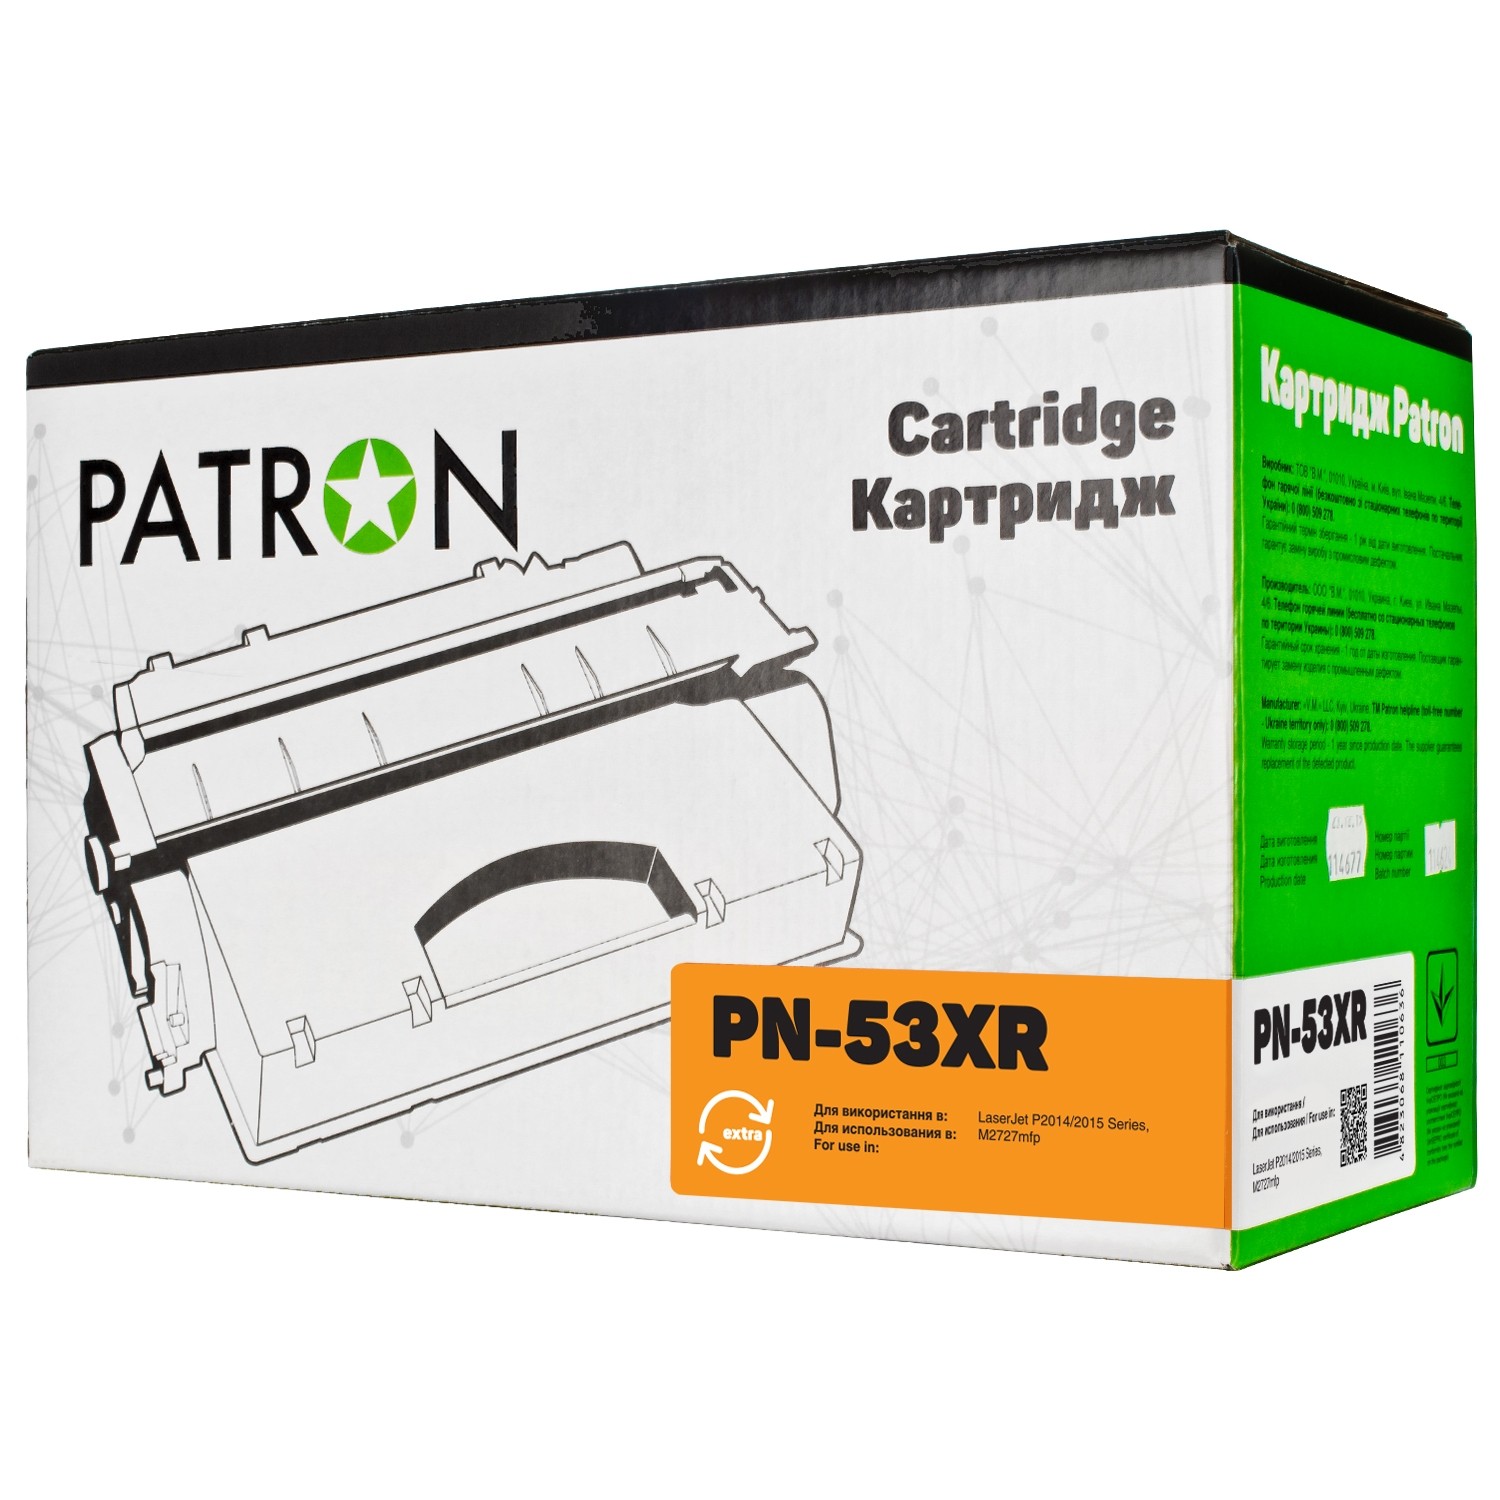 КАРТРИДЖ HP LJ Q7553X (PN-53XR) PATRON Extra